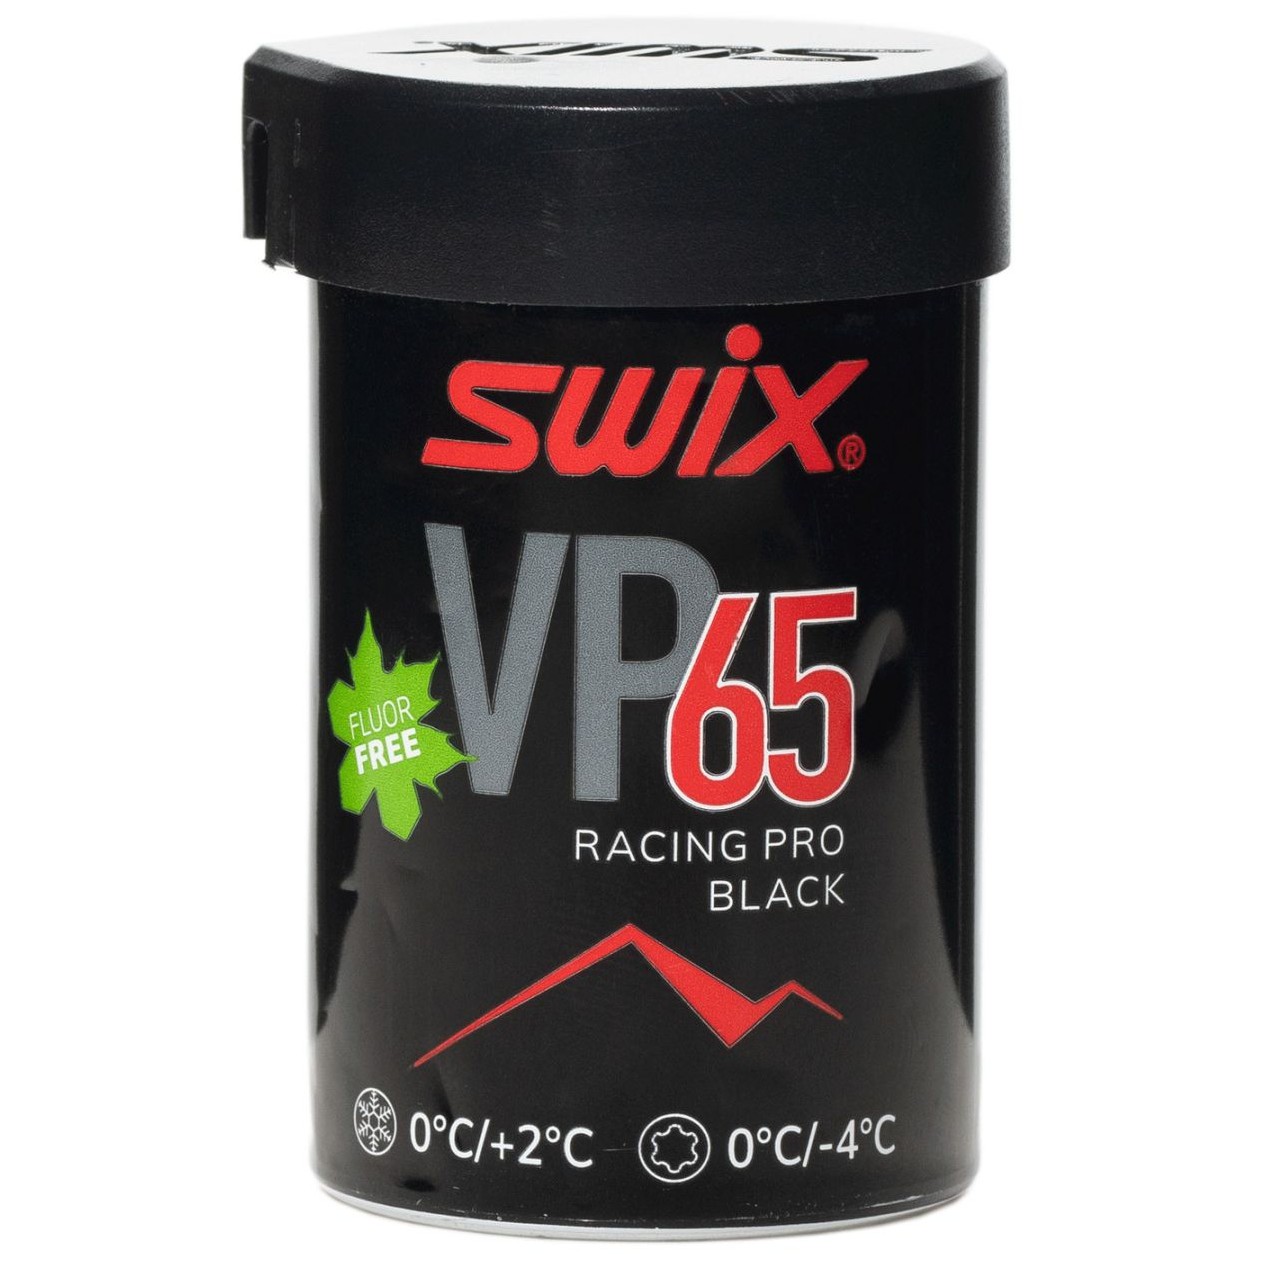 Vosk Swix VP 65 červeno-černý 45g Typ vosku: odrazový